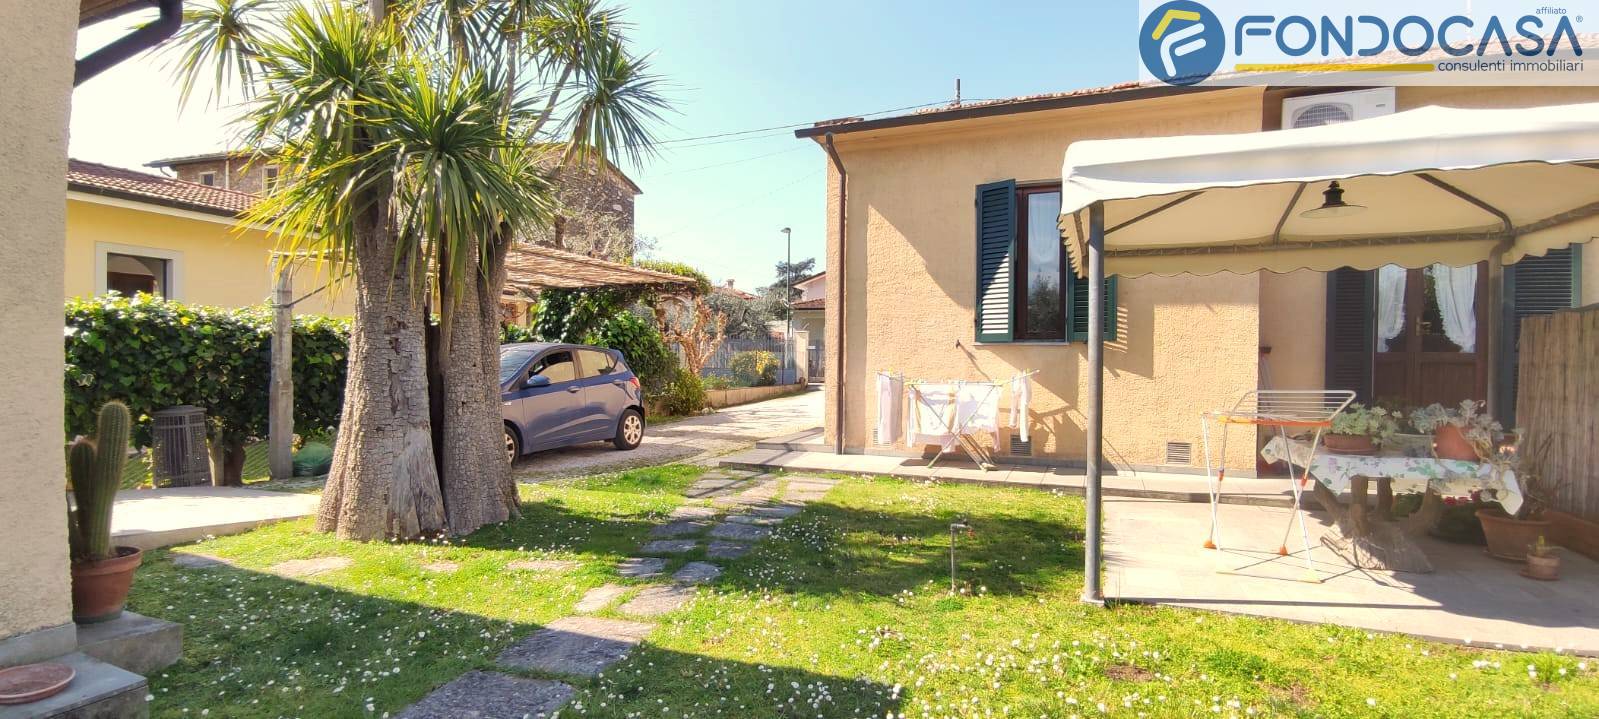 Villa in vendita a Forte dei Marmi, 8 locali, zona na, prezzo € 650.000 | PortaleAgenzieImmobiliari.it